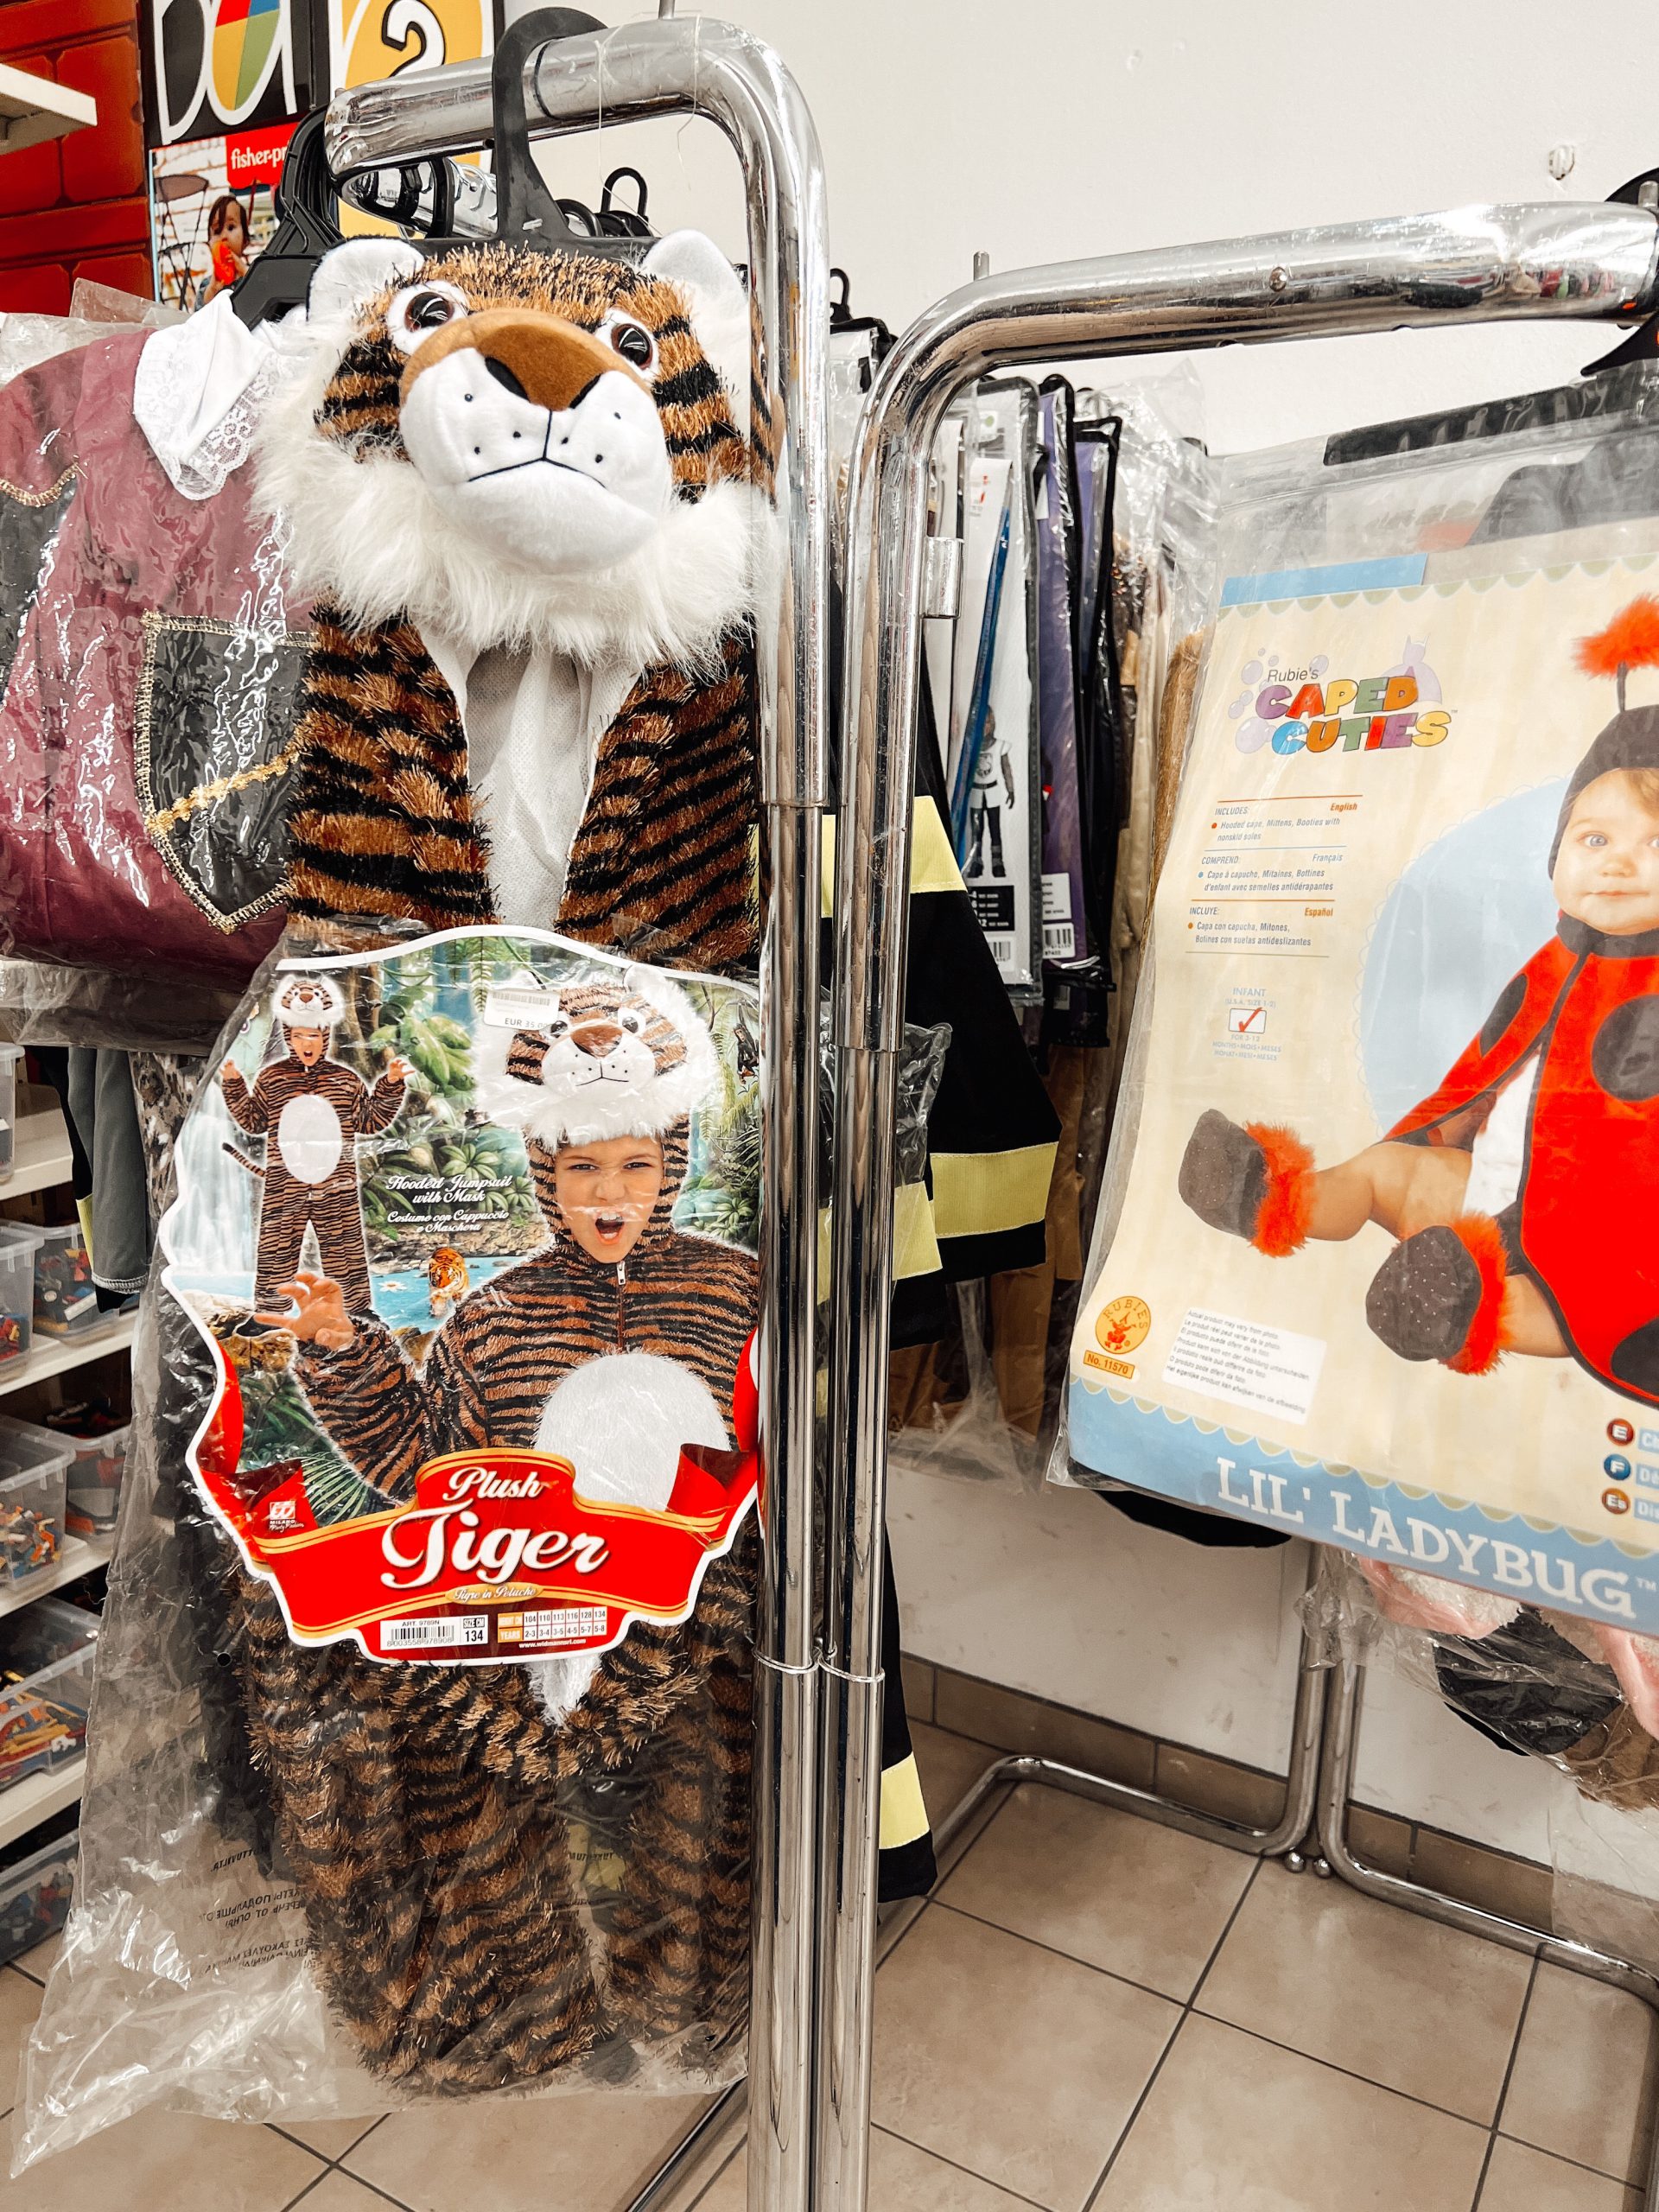 verschiedene Kostüme wie Tigerkostüm und Marienkäferkostüm für Kinder auf einem Kleiderständer in einem Geschäft